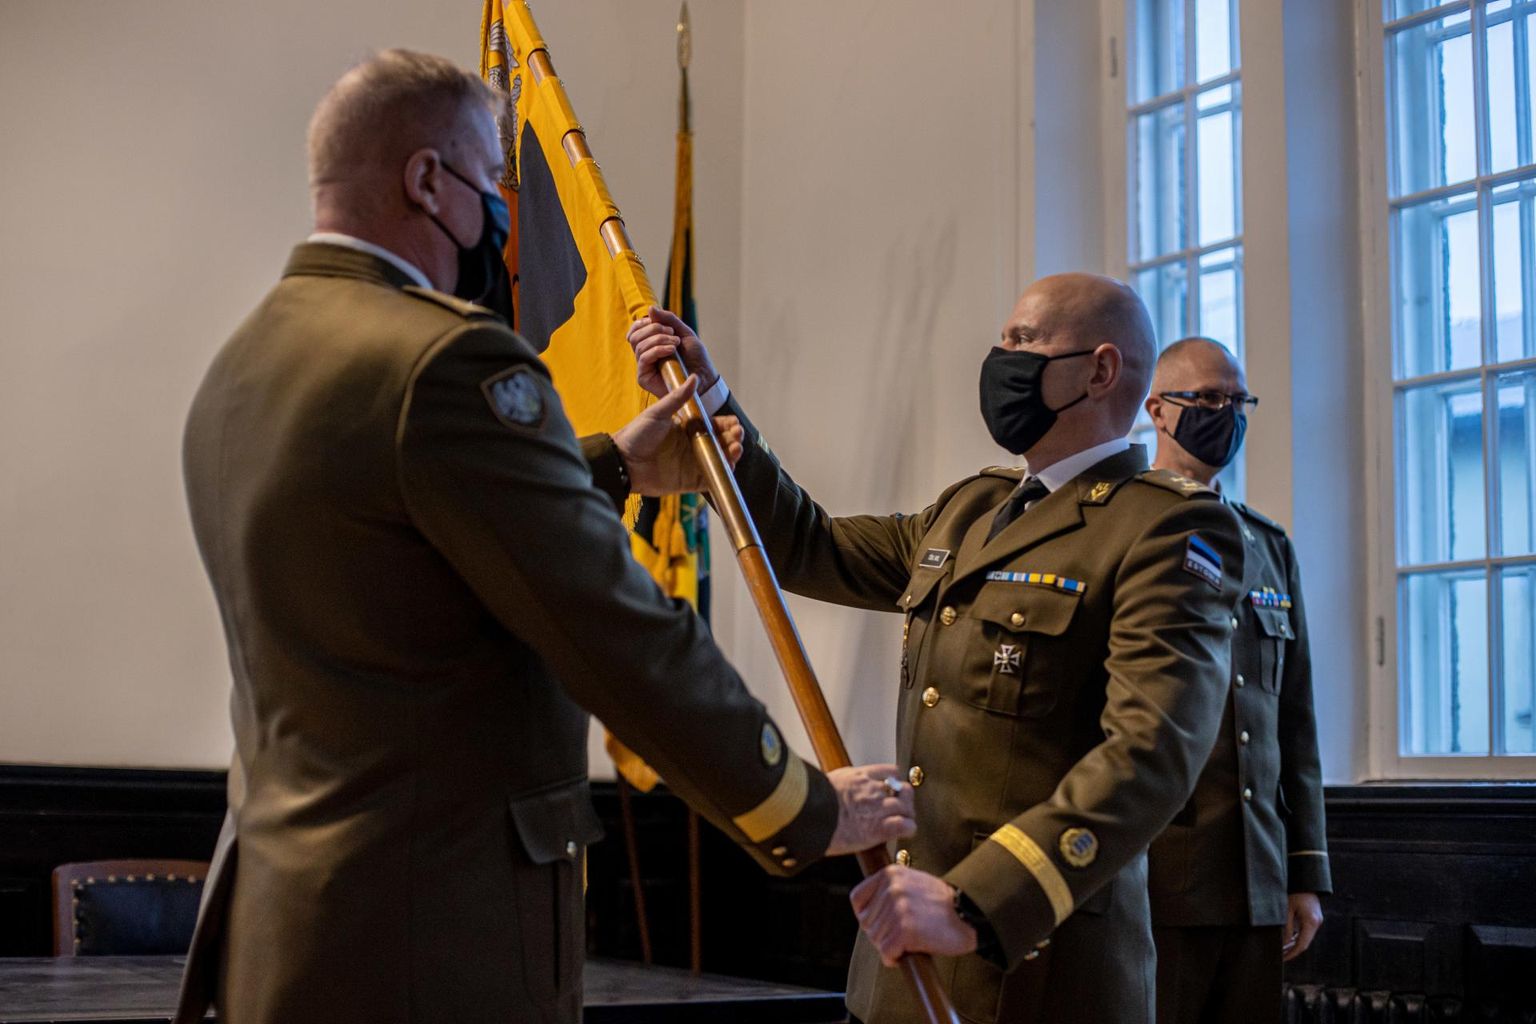 Kaitseliidu ülem brigaadikindral Riho Ühtegi andis Pärnumaa maleva lipu üle uuele pealikule kolonelleitnant Tõnu Miilile.